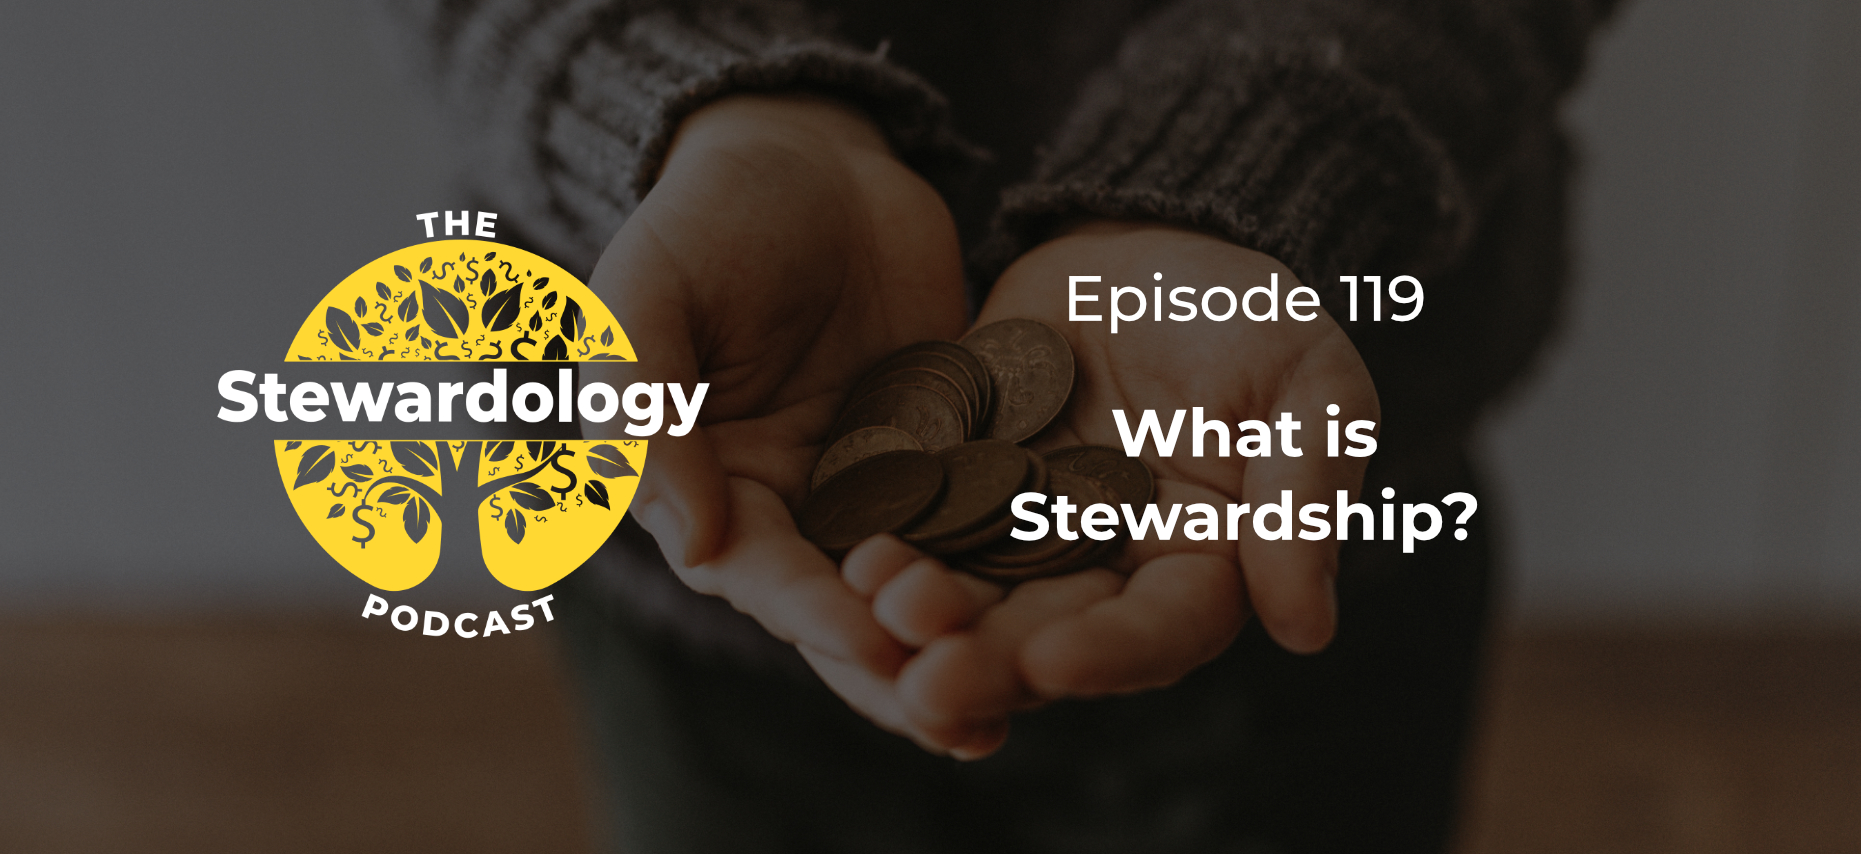 What is Stewardship?